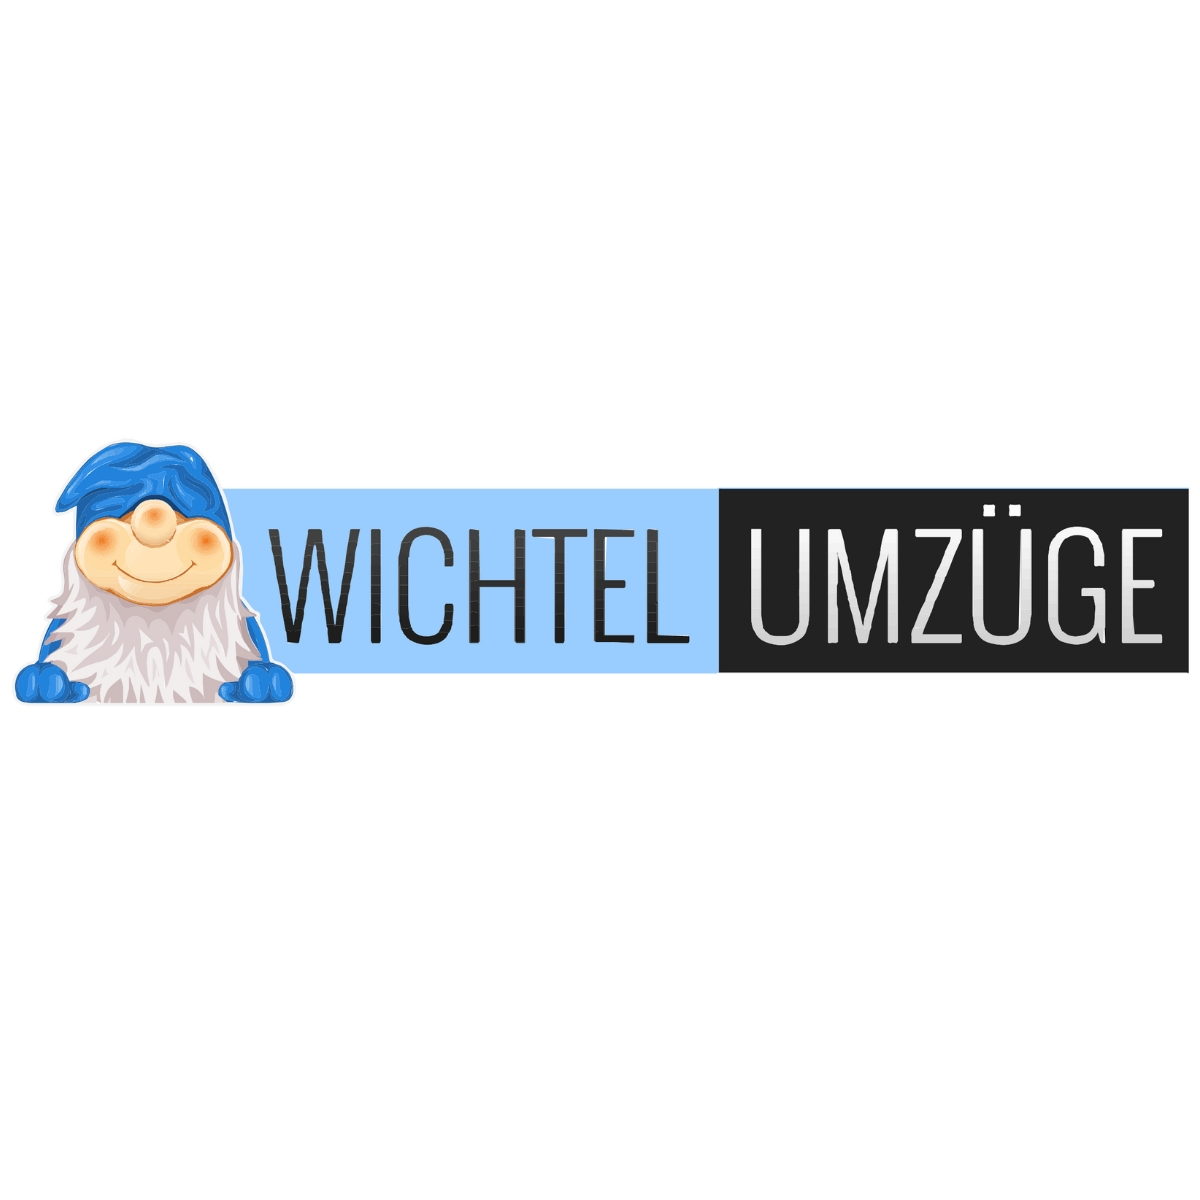 Wichtel Umzüge | Umzugsunternehmen Berlin Logo